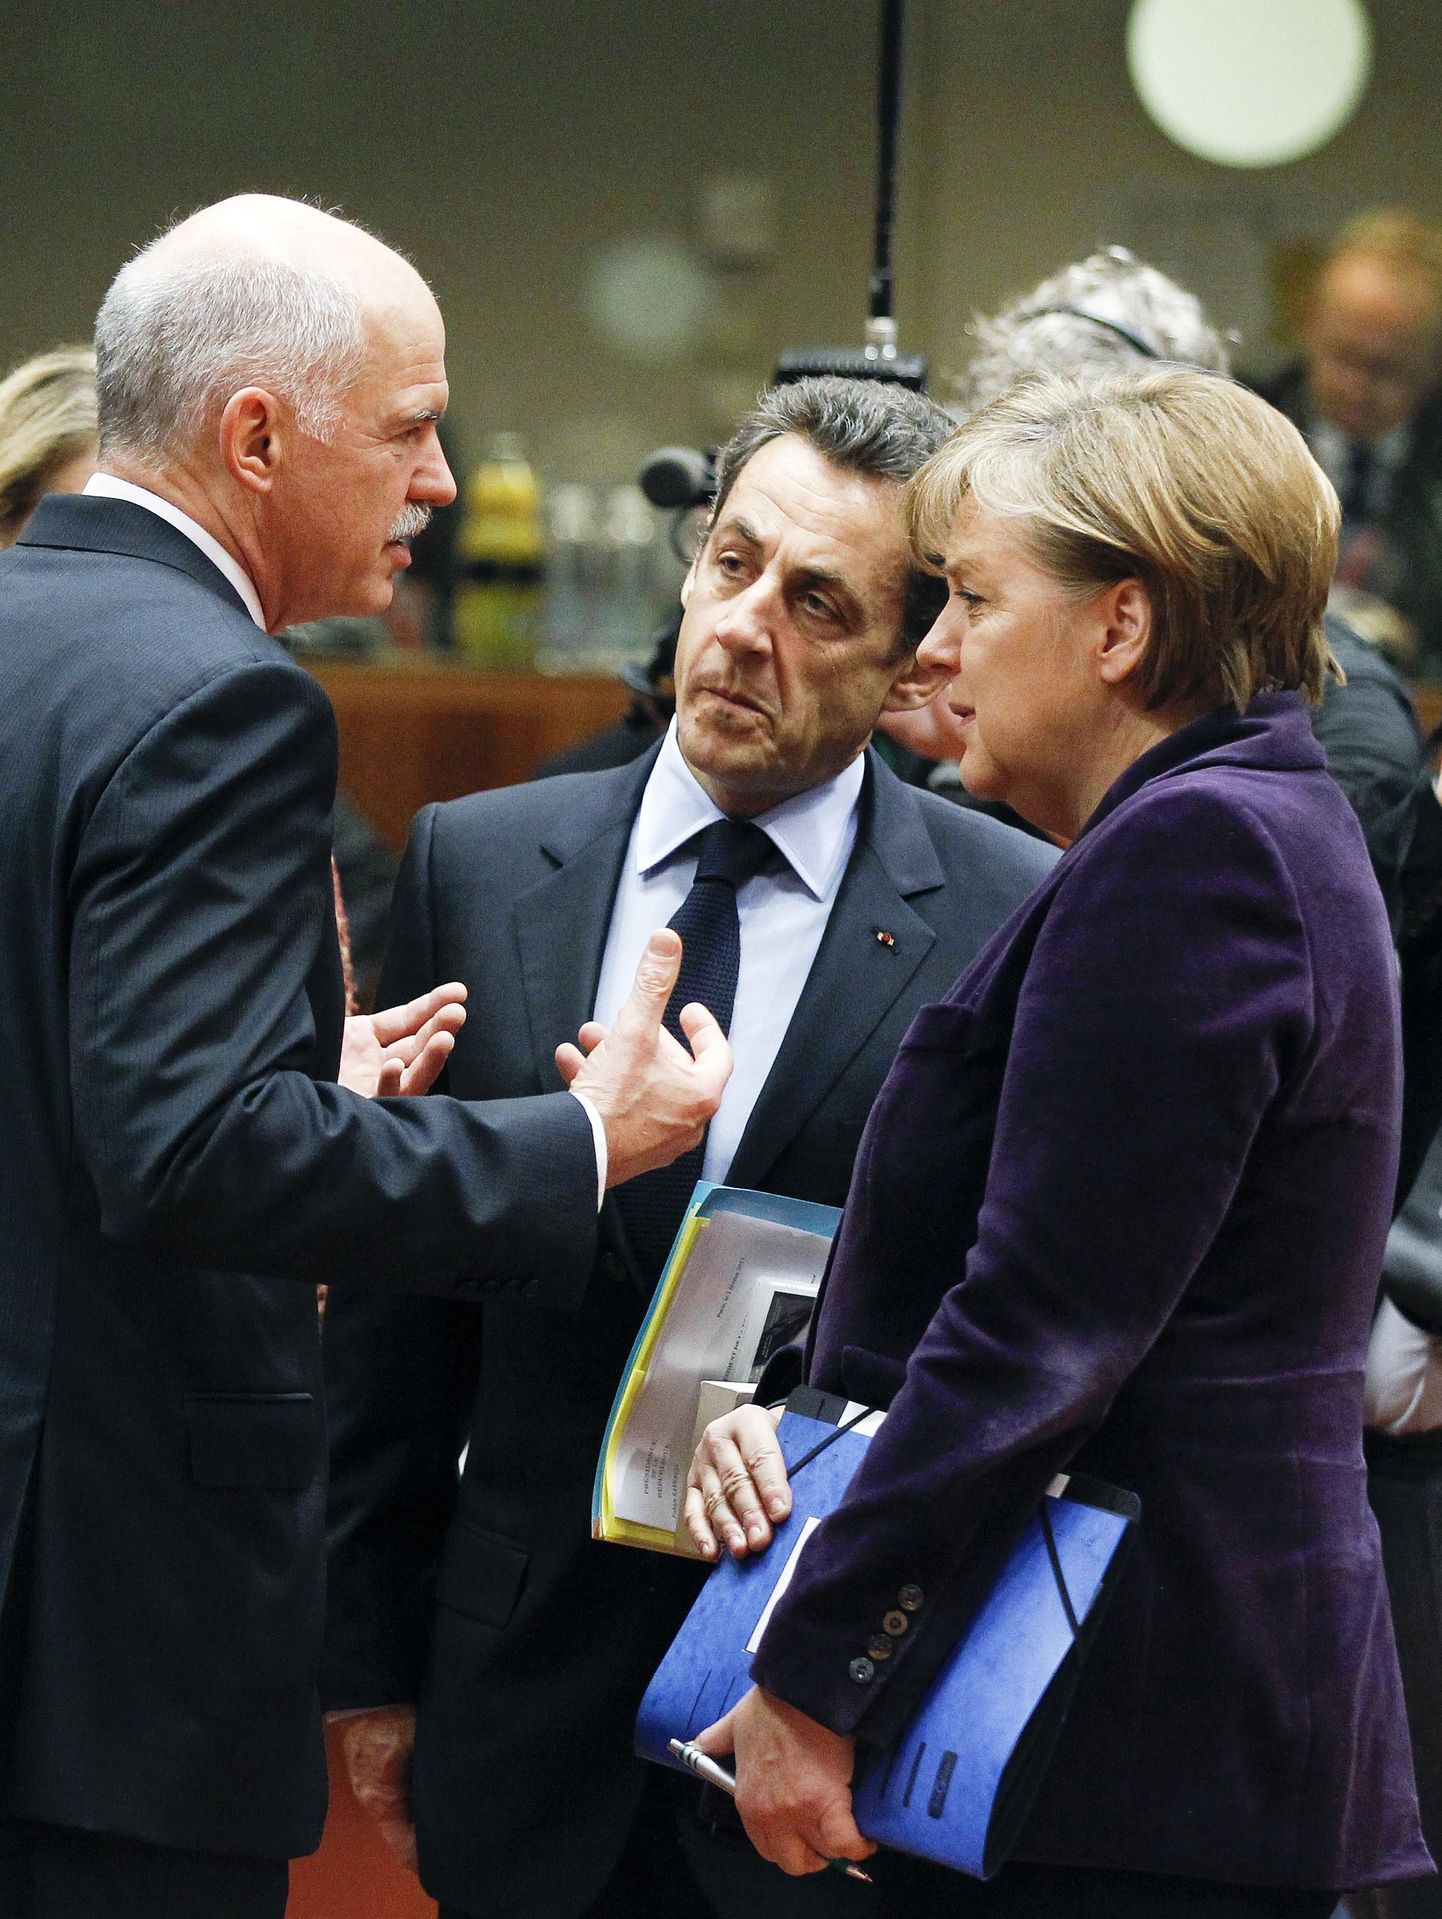 Kreeka peaministri George Papandreou, Prantsuse president Nicolas Sarkozy ja Saksa kantsler Angela Merkel